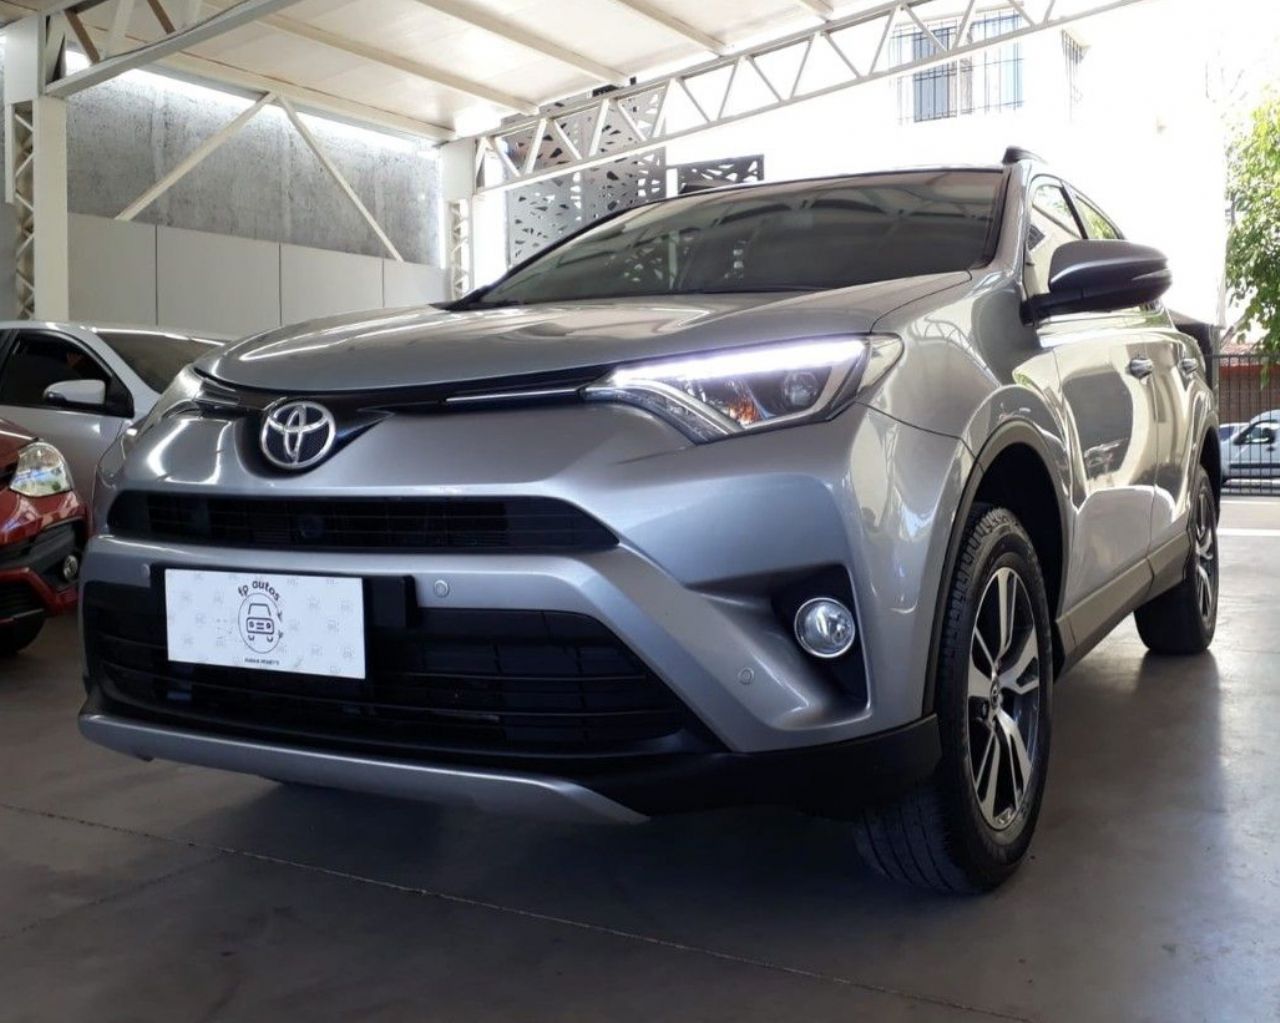 Toyota RAV4 Usado Financiado en Mendoza, deRuedas